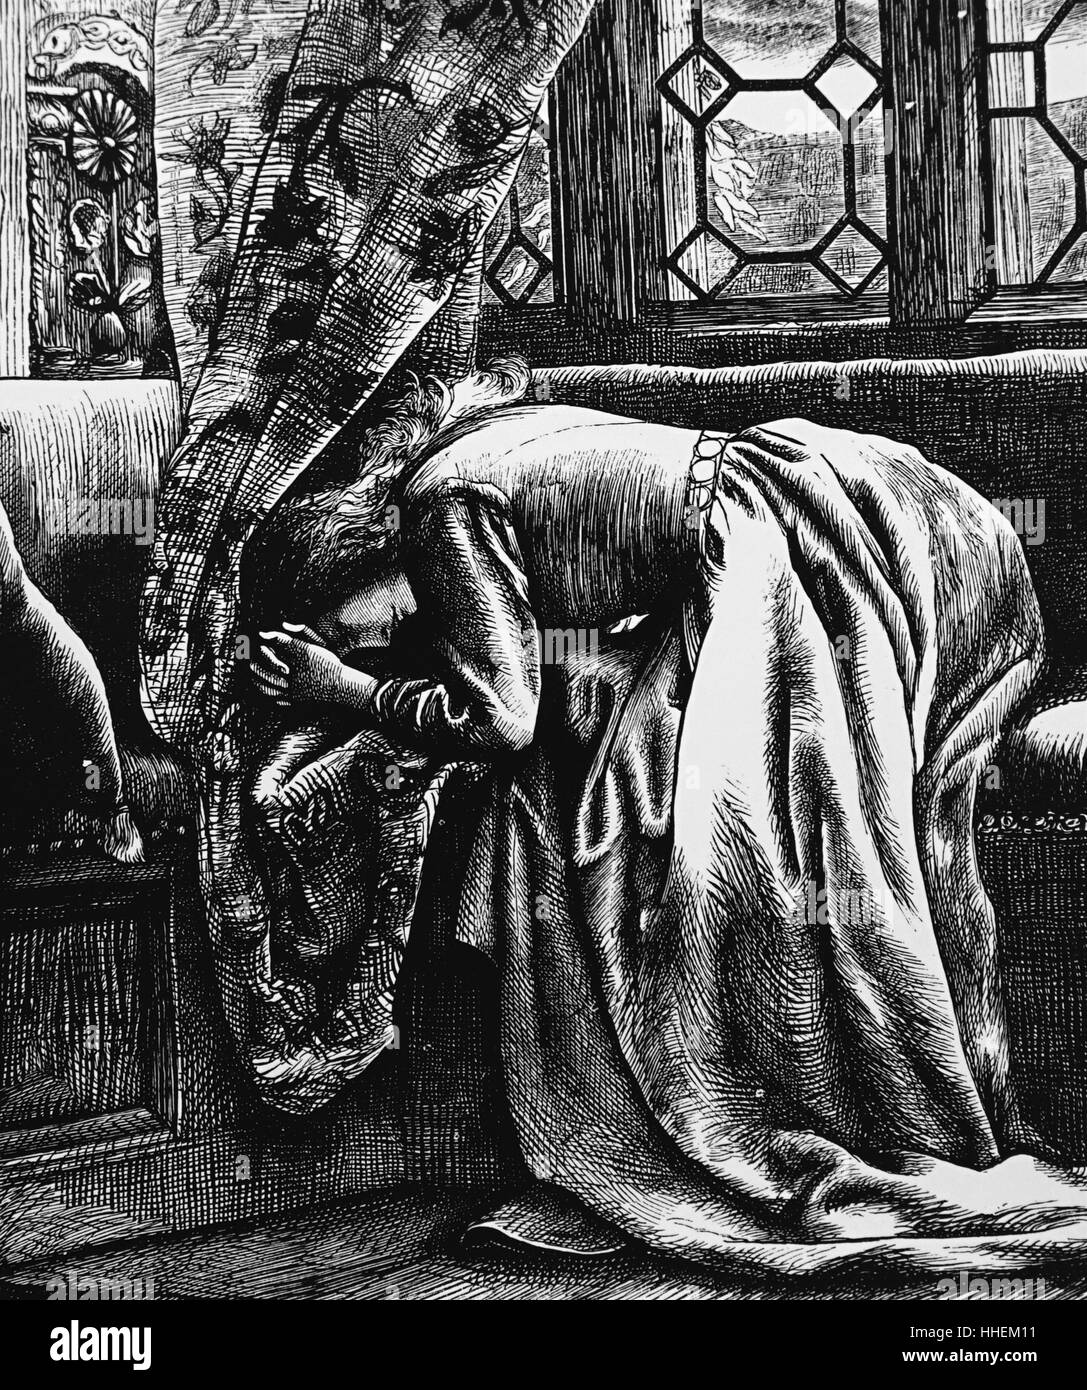 Abbildung: Darstellung einer Frau trauert. Mit Ill. von Arthur Hughes (1832-1915) ein englischer Maler und Illustrator mit dem Pre-Raphaelite Bruderschaft verbunden. Vom 19. Jahrhundert Stockfoto